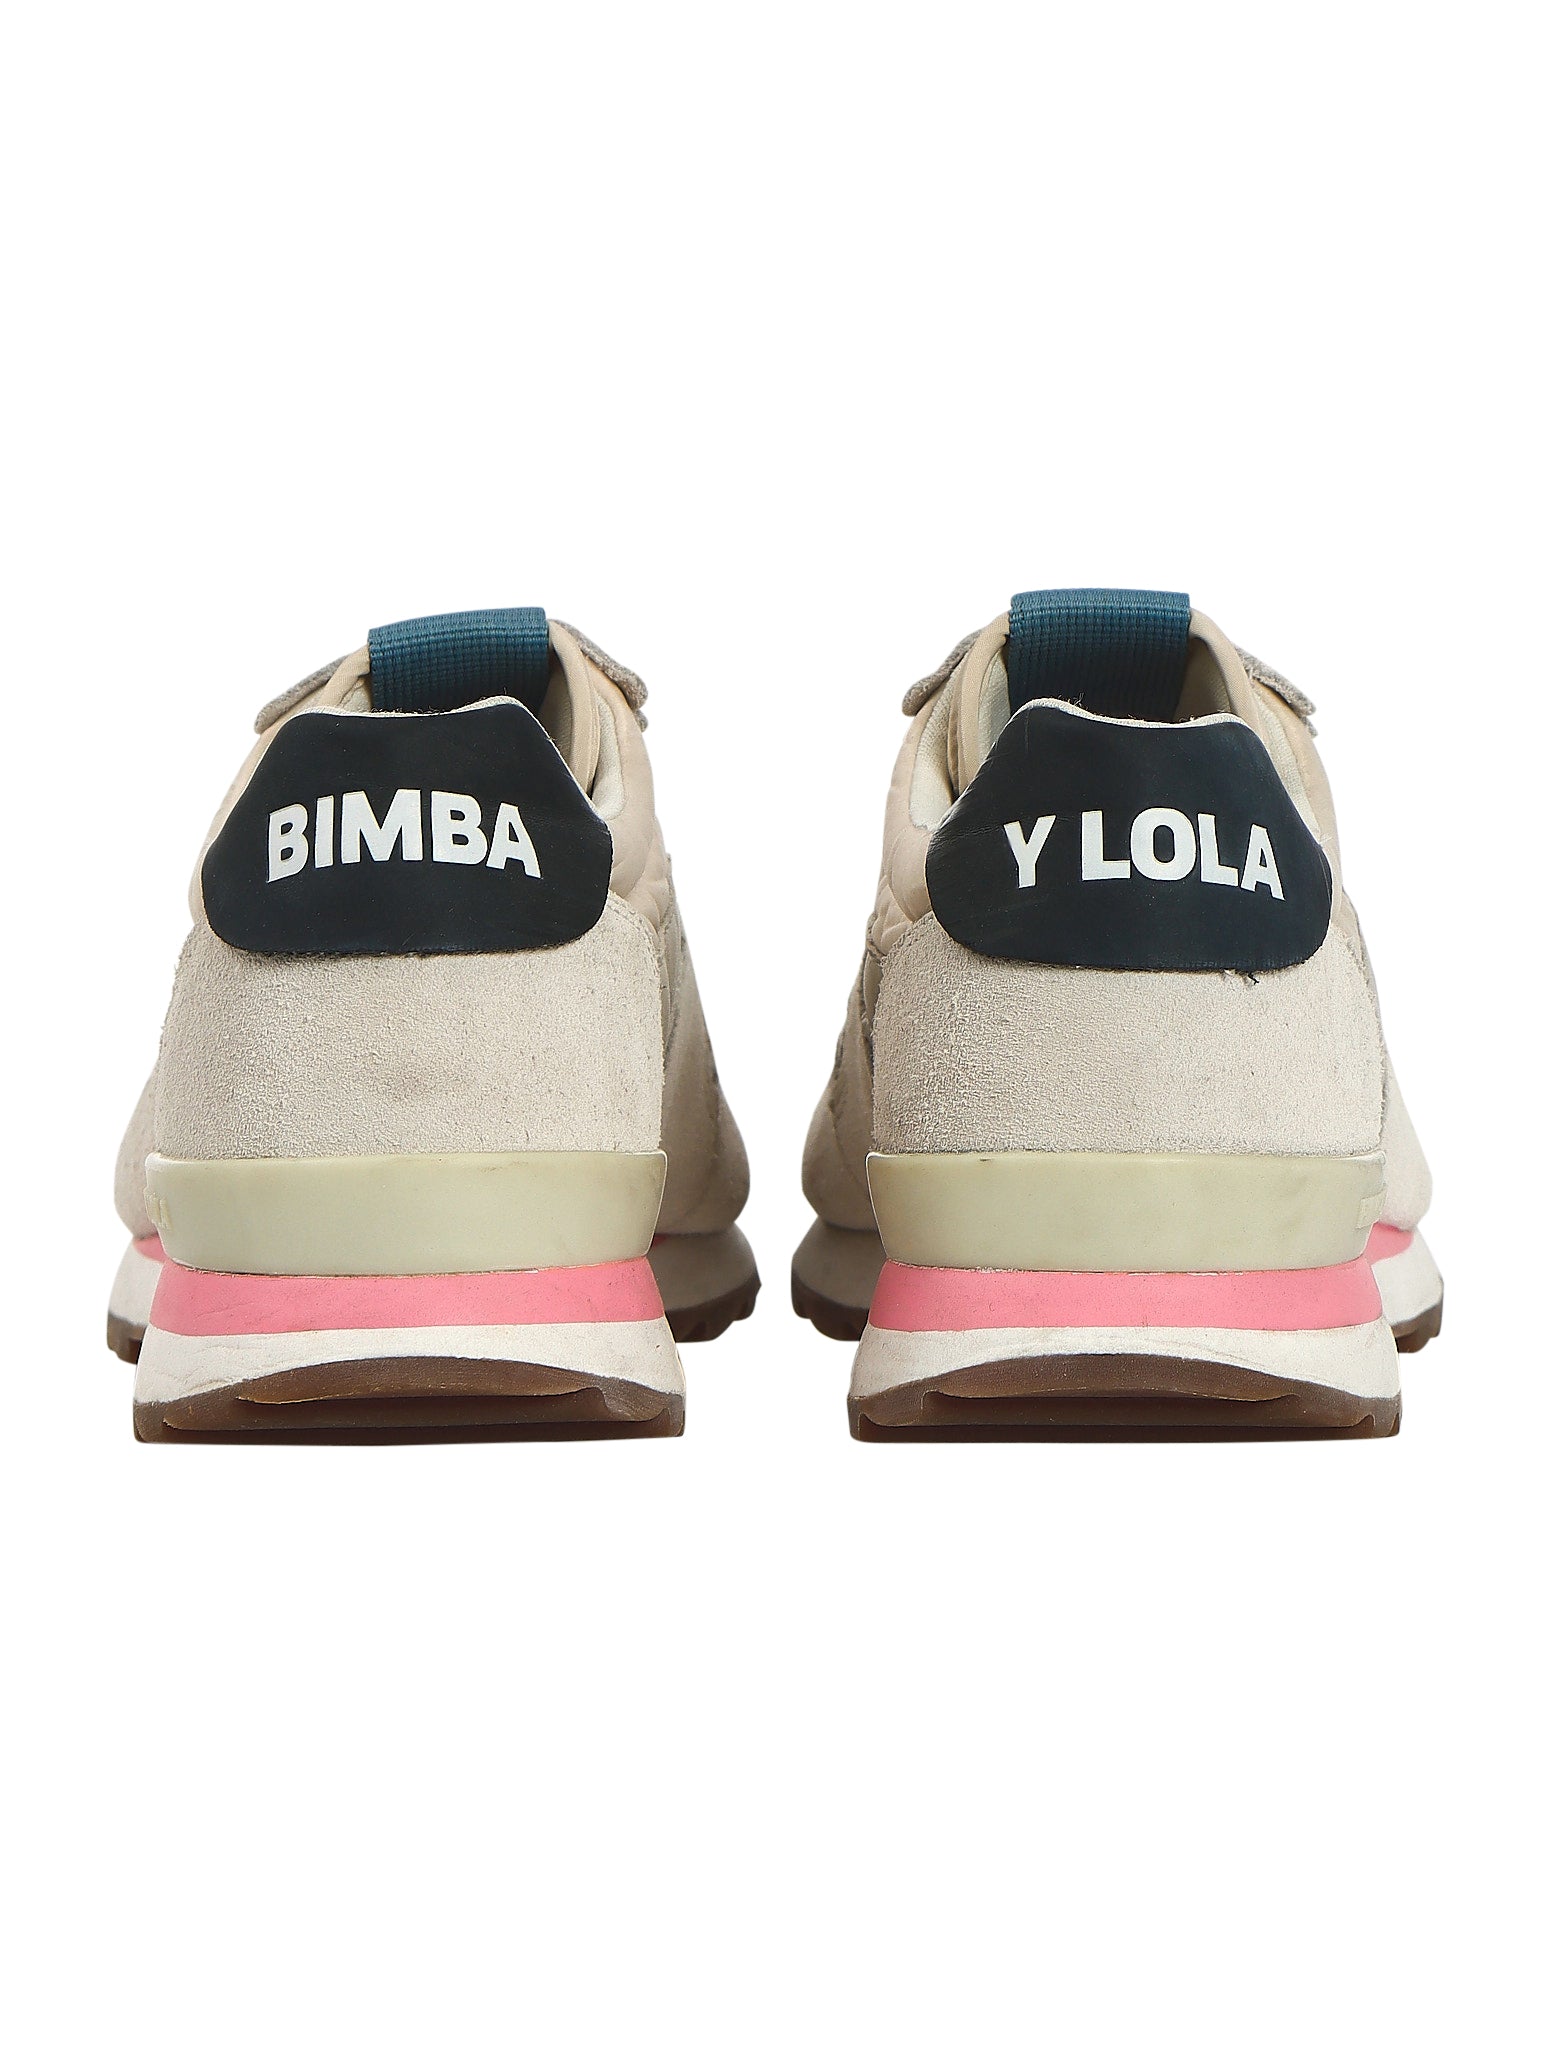 Bimba Y Lola Sneakers – The Turn